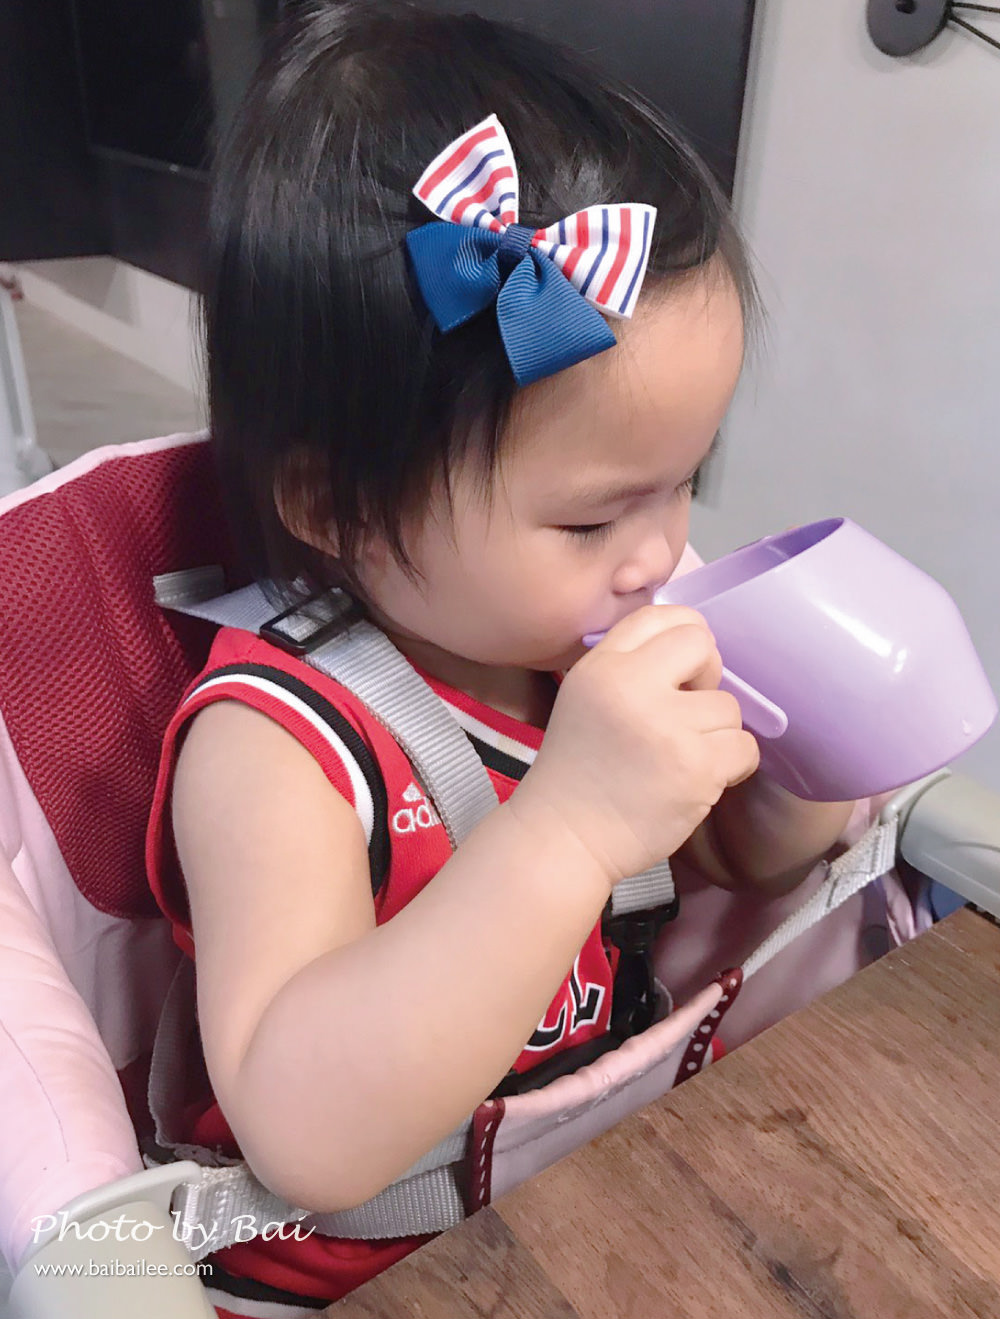 [啾團] 小寶寶的第一個自主學習杯,讓喝水變得很簡單-Doidy Cup英國彩虹學習杯